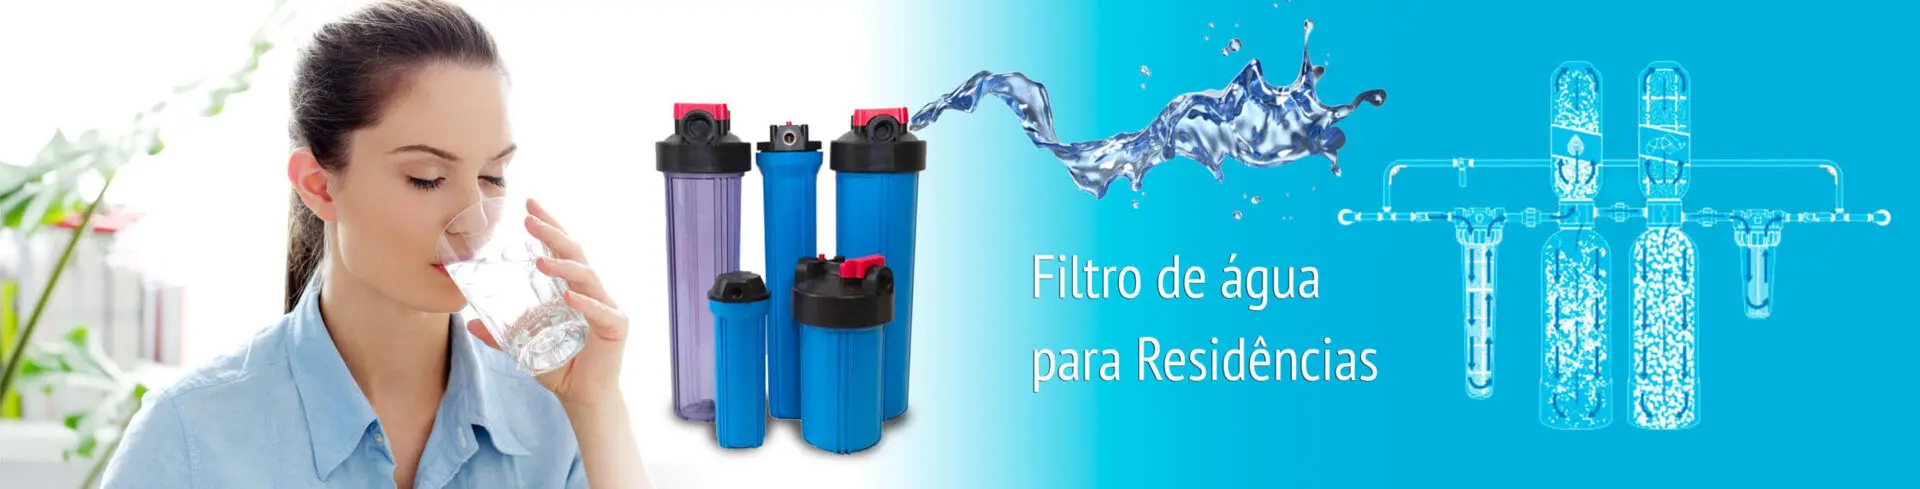 filtros-de-agua-para-residencias